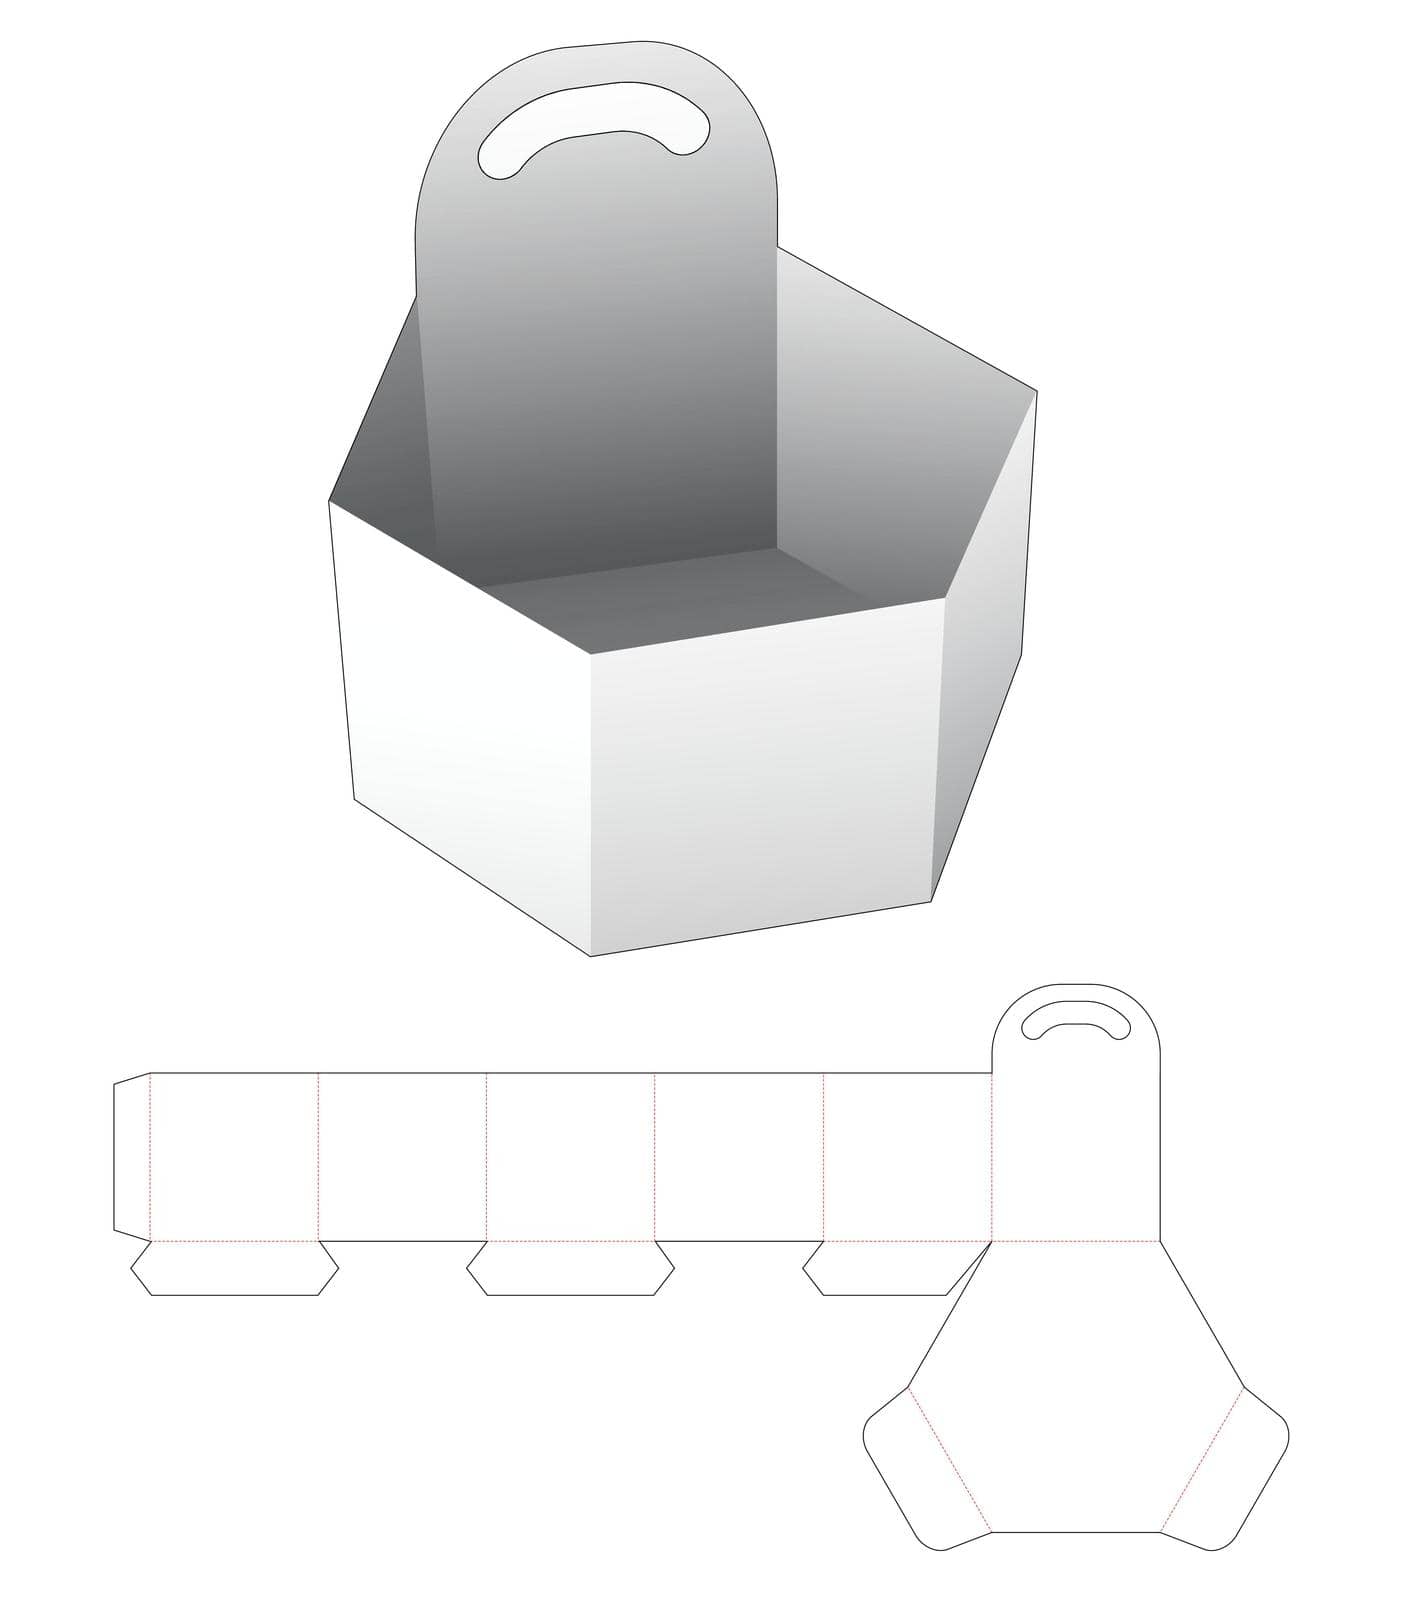 Cardboard handle hexagonal tray die cut template by valueinvestor